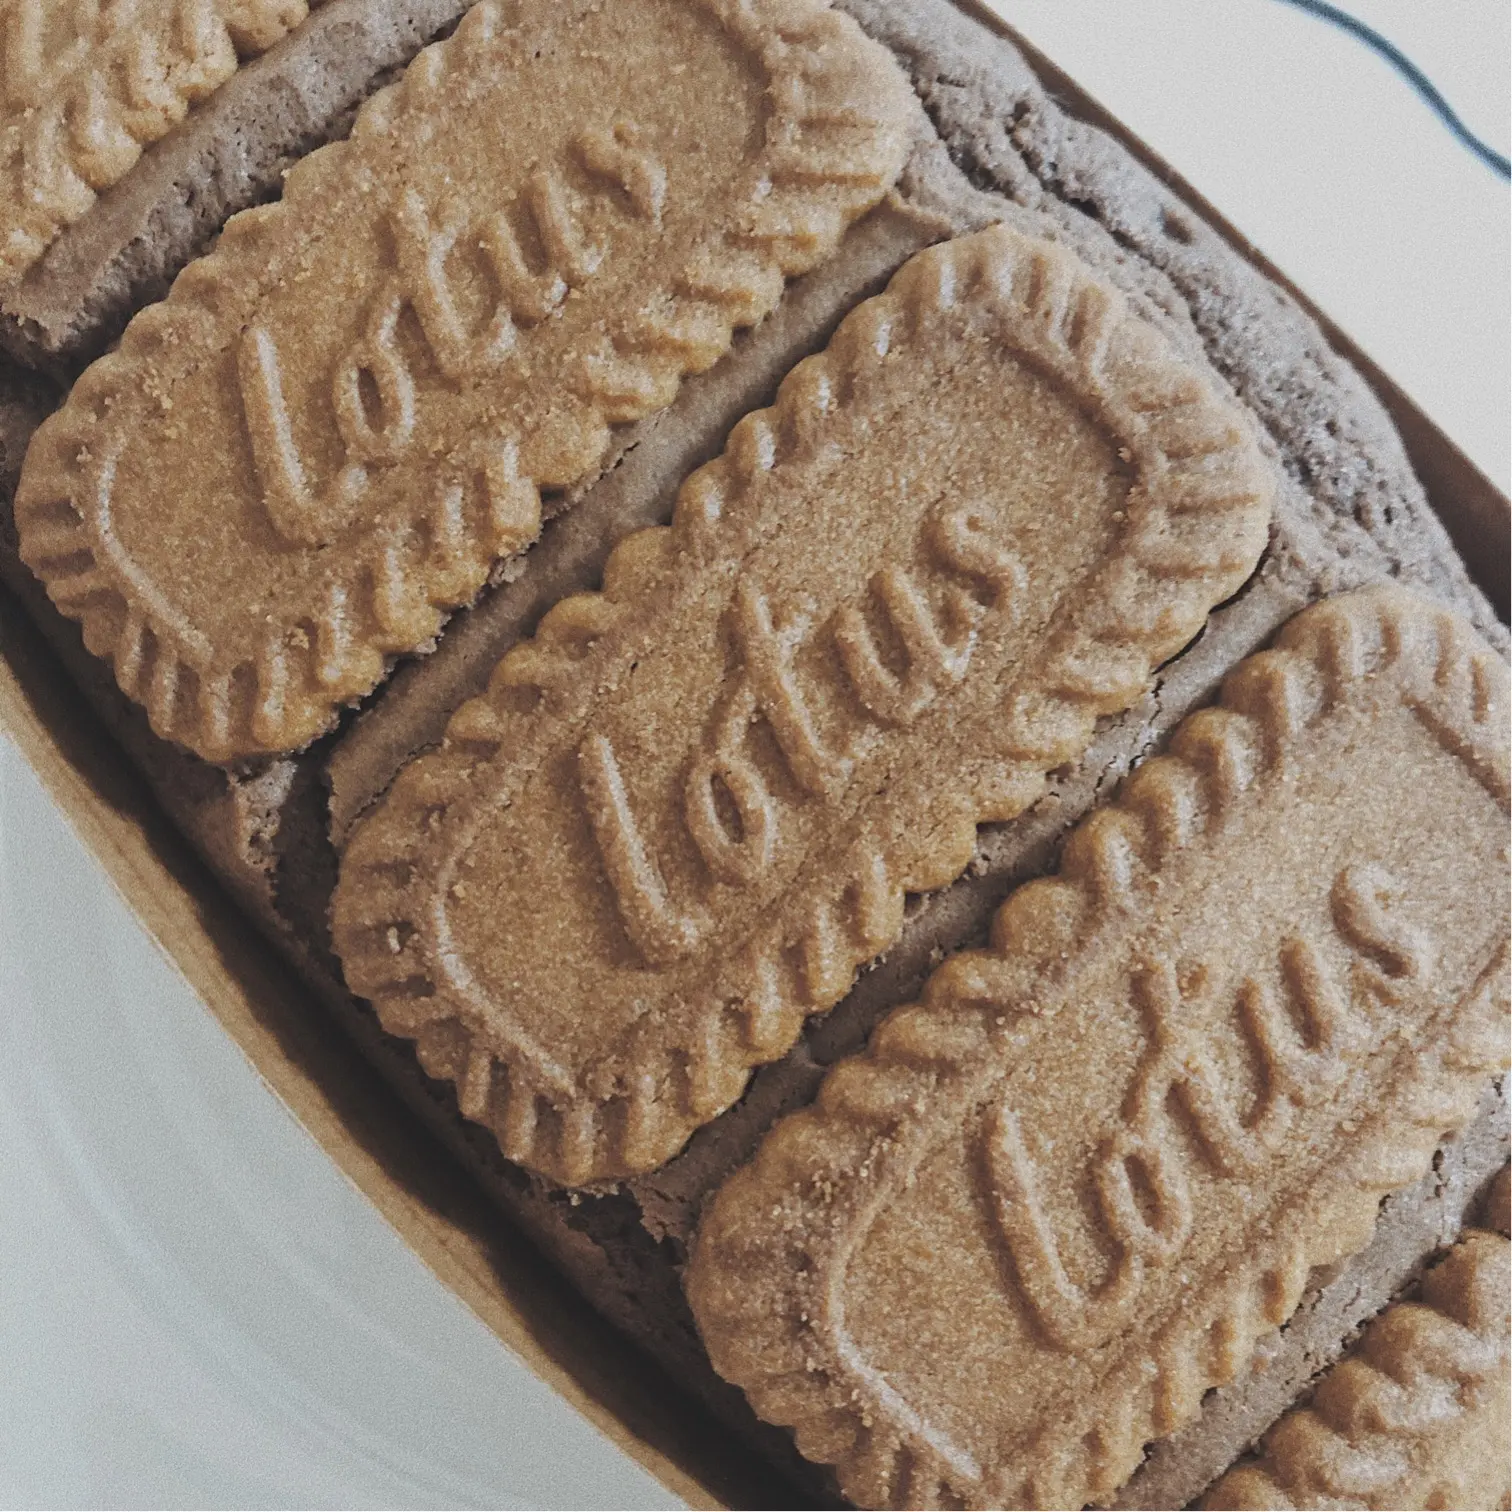 ベルギーの有名ブランドお菓子 ロータス を使った手作りチョコブラウニーが可愛いすぎる Moreインフルエンサーズブログ Daily More